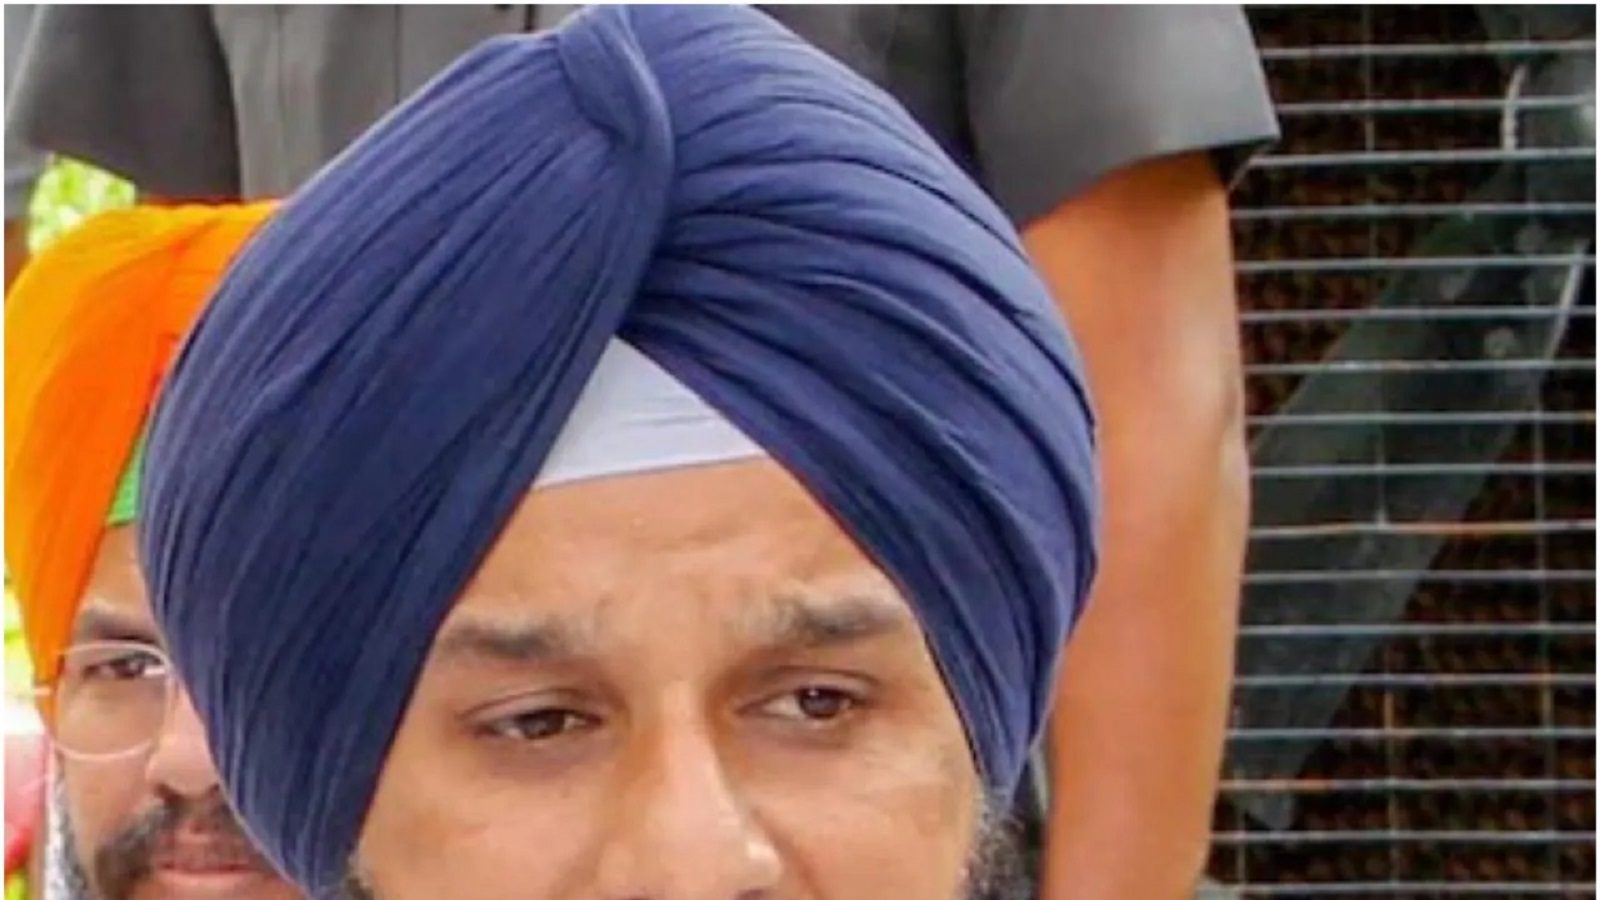 Punjab: ड्रग केस में फंसे पूर्व मंत्री मजीठिया की कोर्ट में होगी सुनवाई, आतंकियों से जान को बताया खतरा  